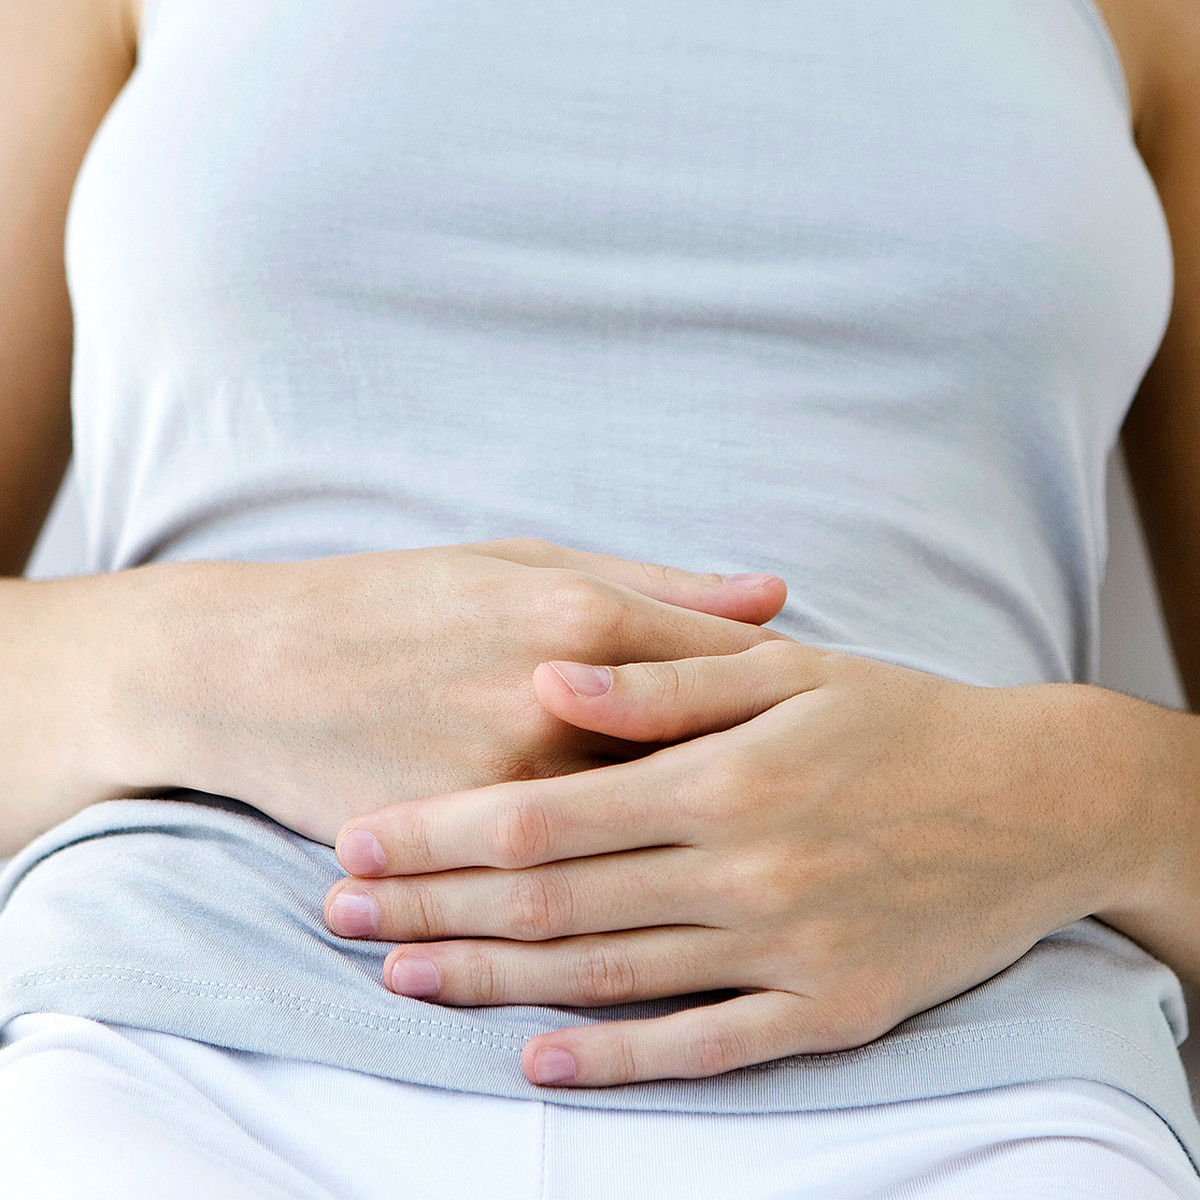 Как выглядят выделения перед менструацией? | АФК